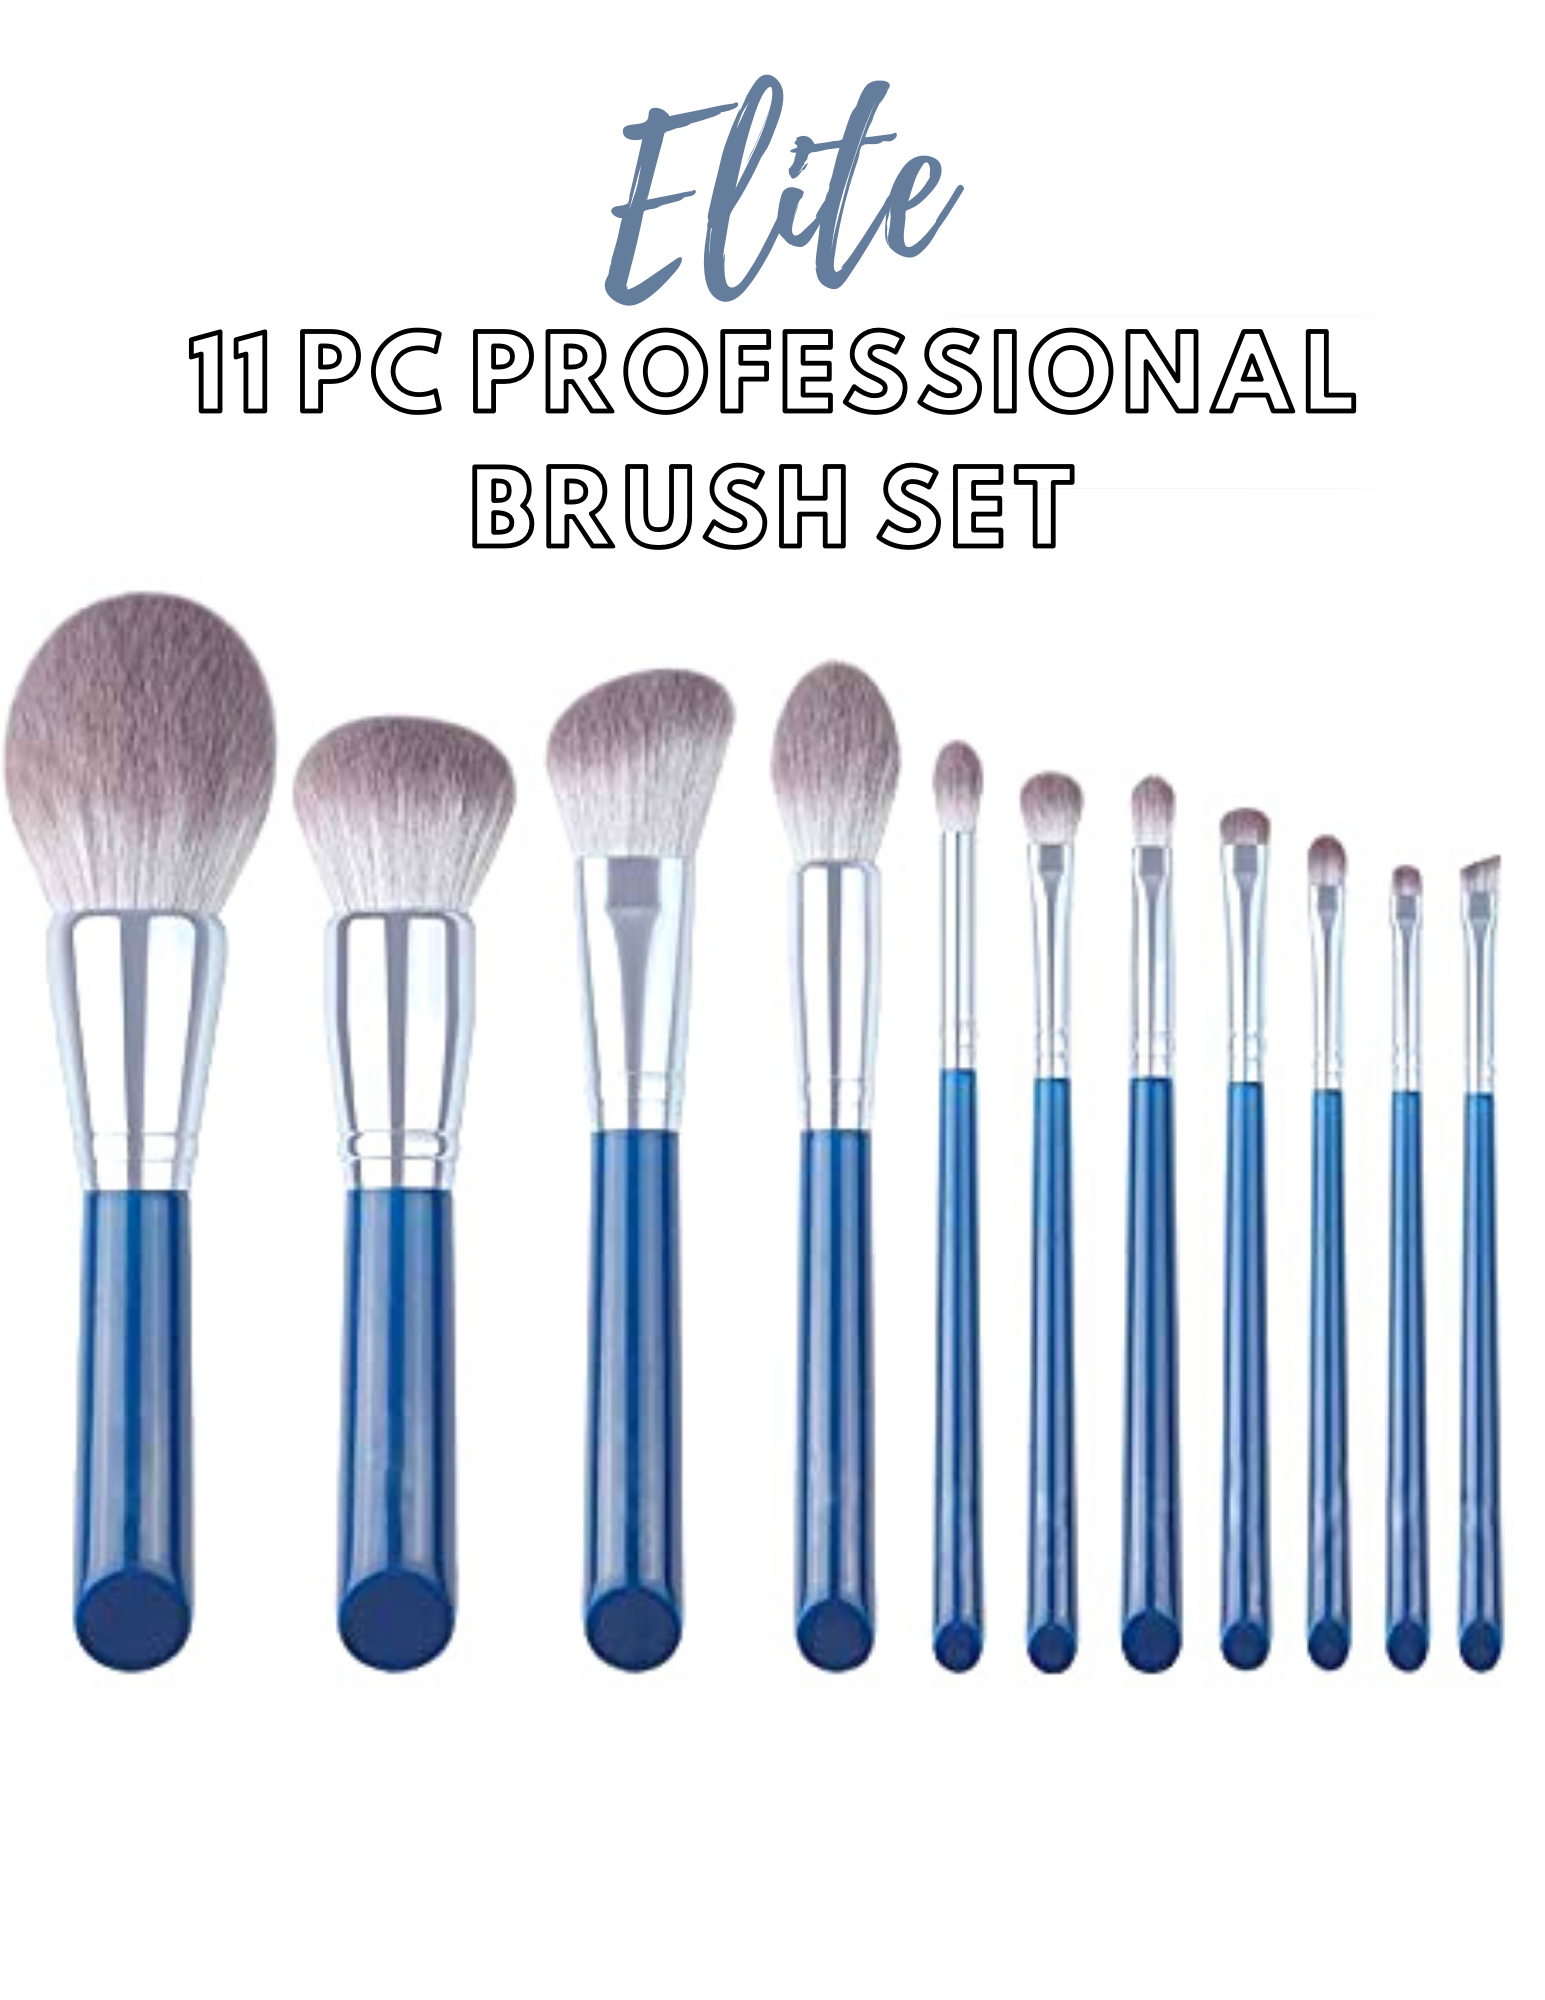 Elite Professional 11pc Brush Set